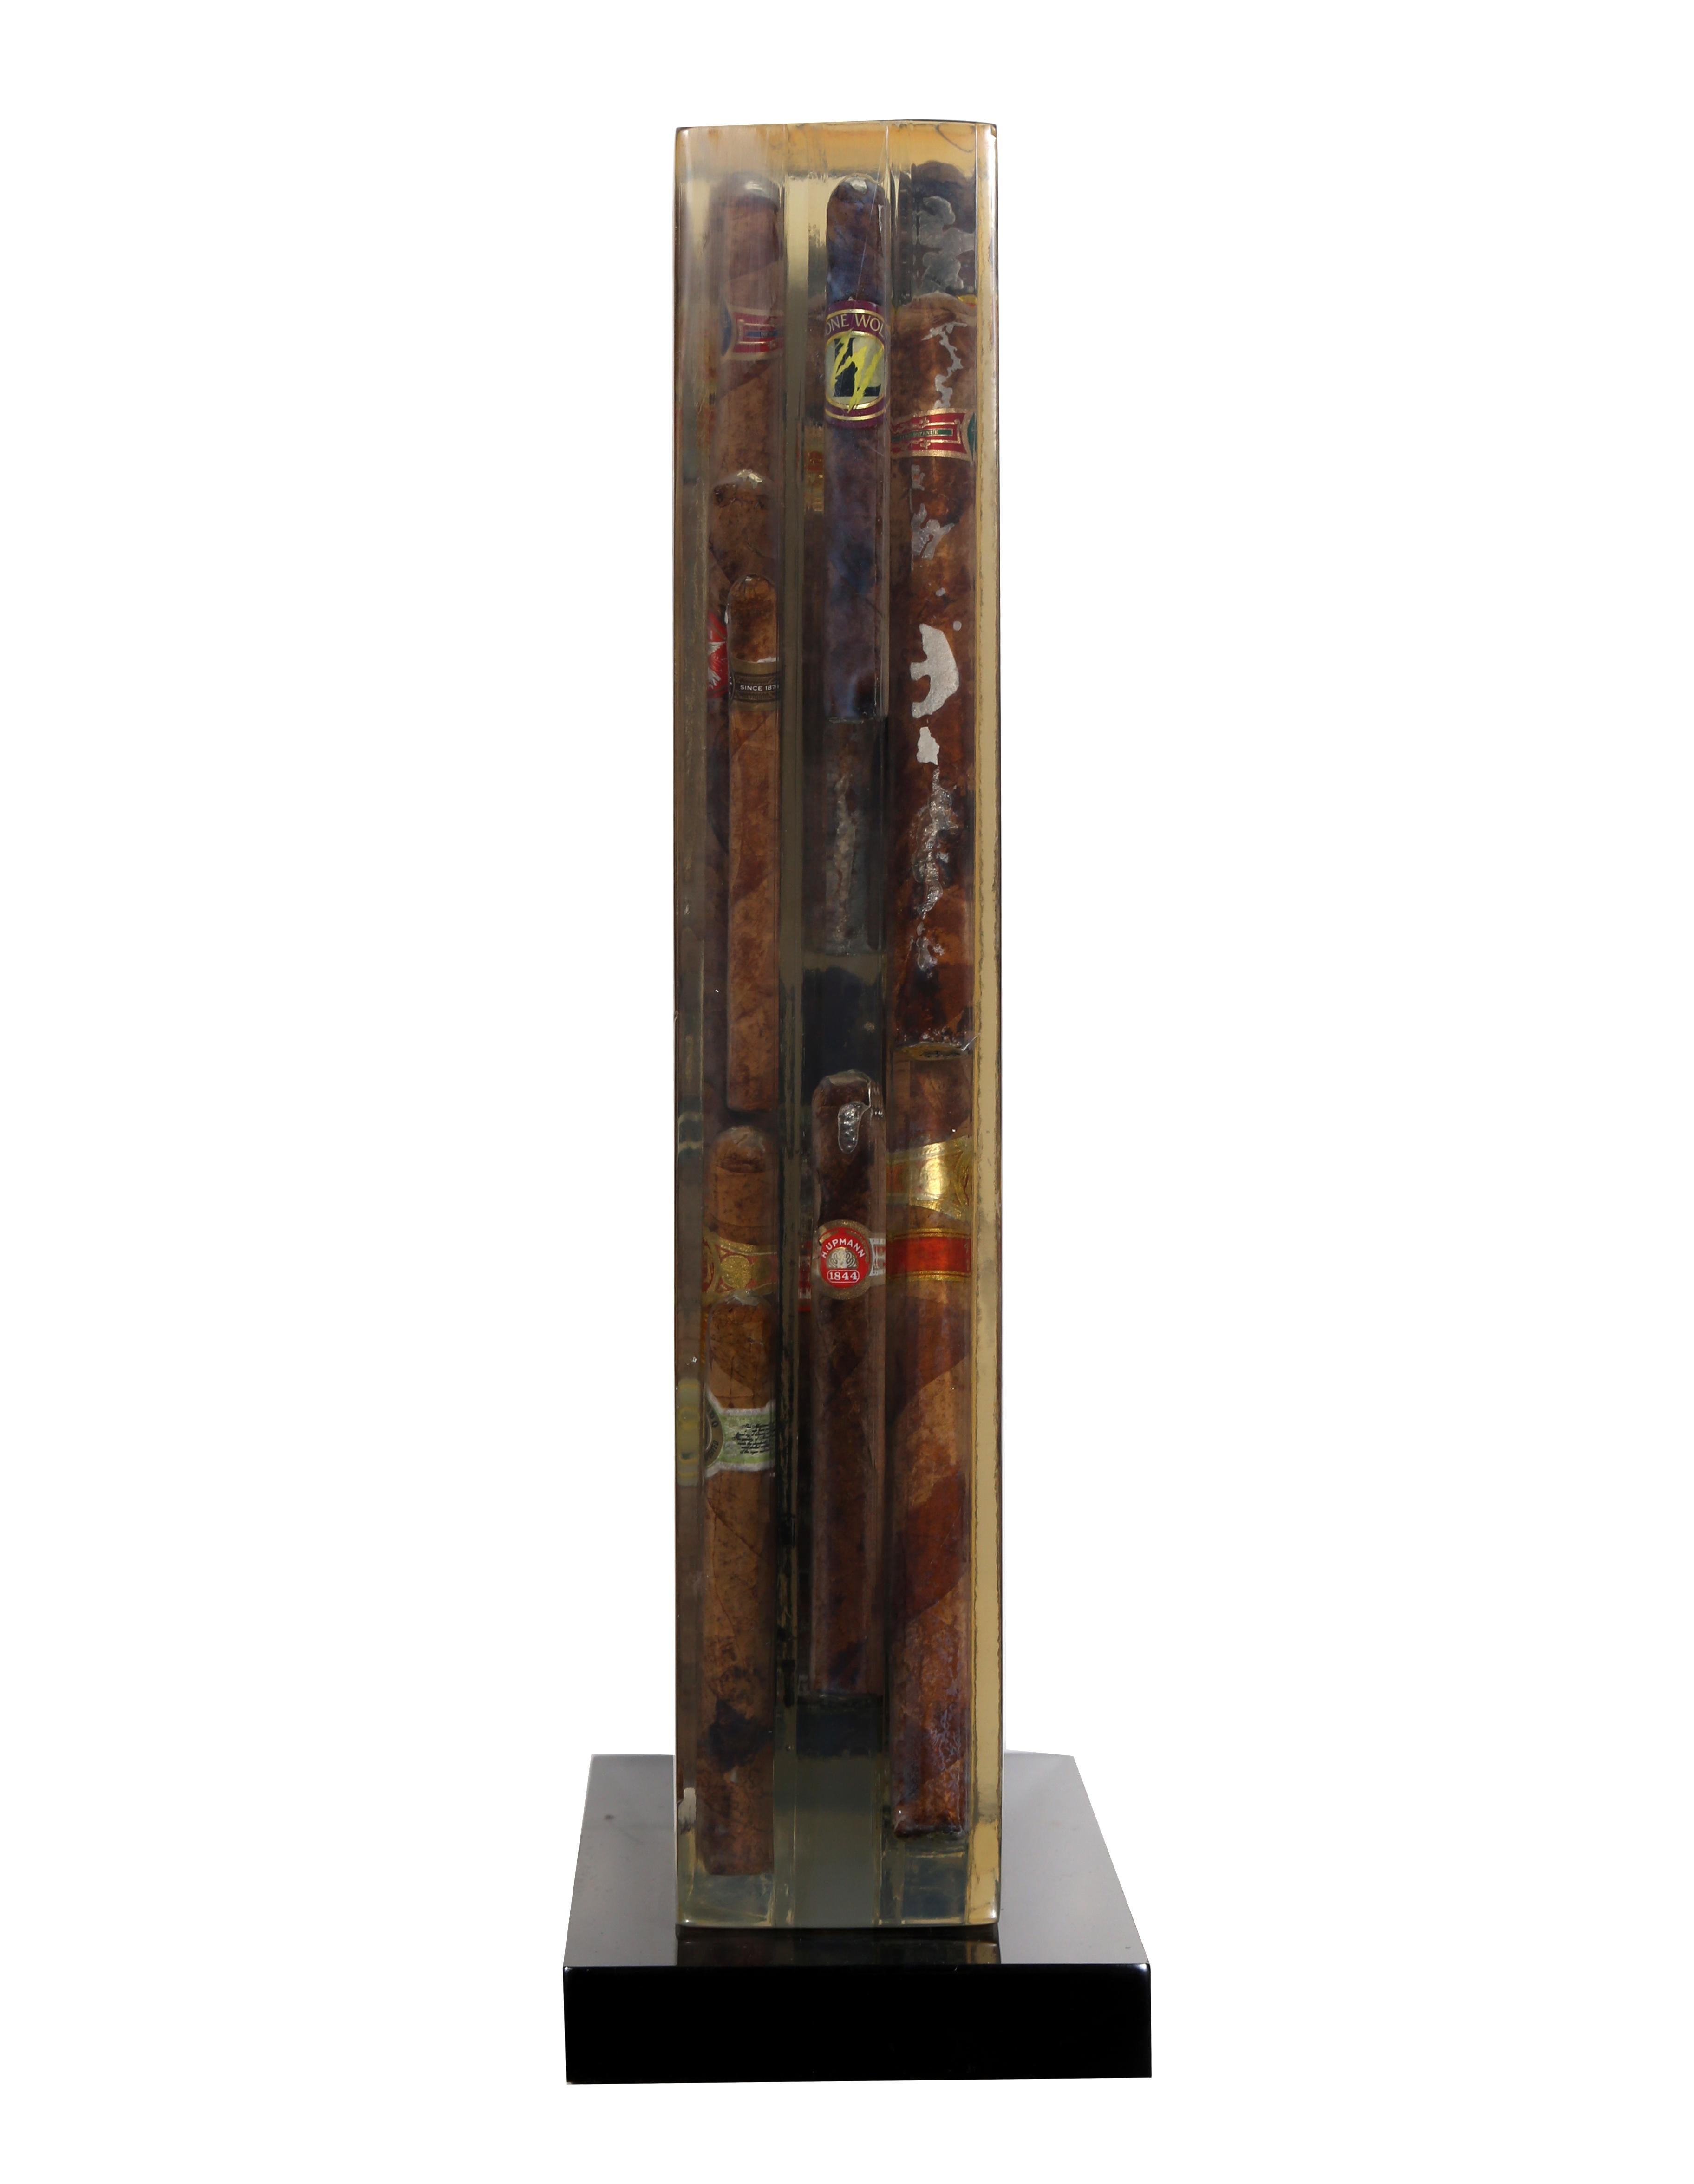 Une sculpture unique de l'artiste français Arman. Cette collection de cigares de classe mondiale enfermés dans de la résine transparente est une pièce caractéristique de la période 